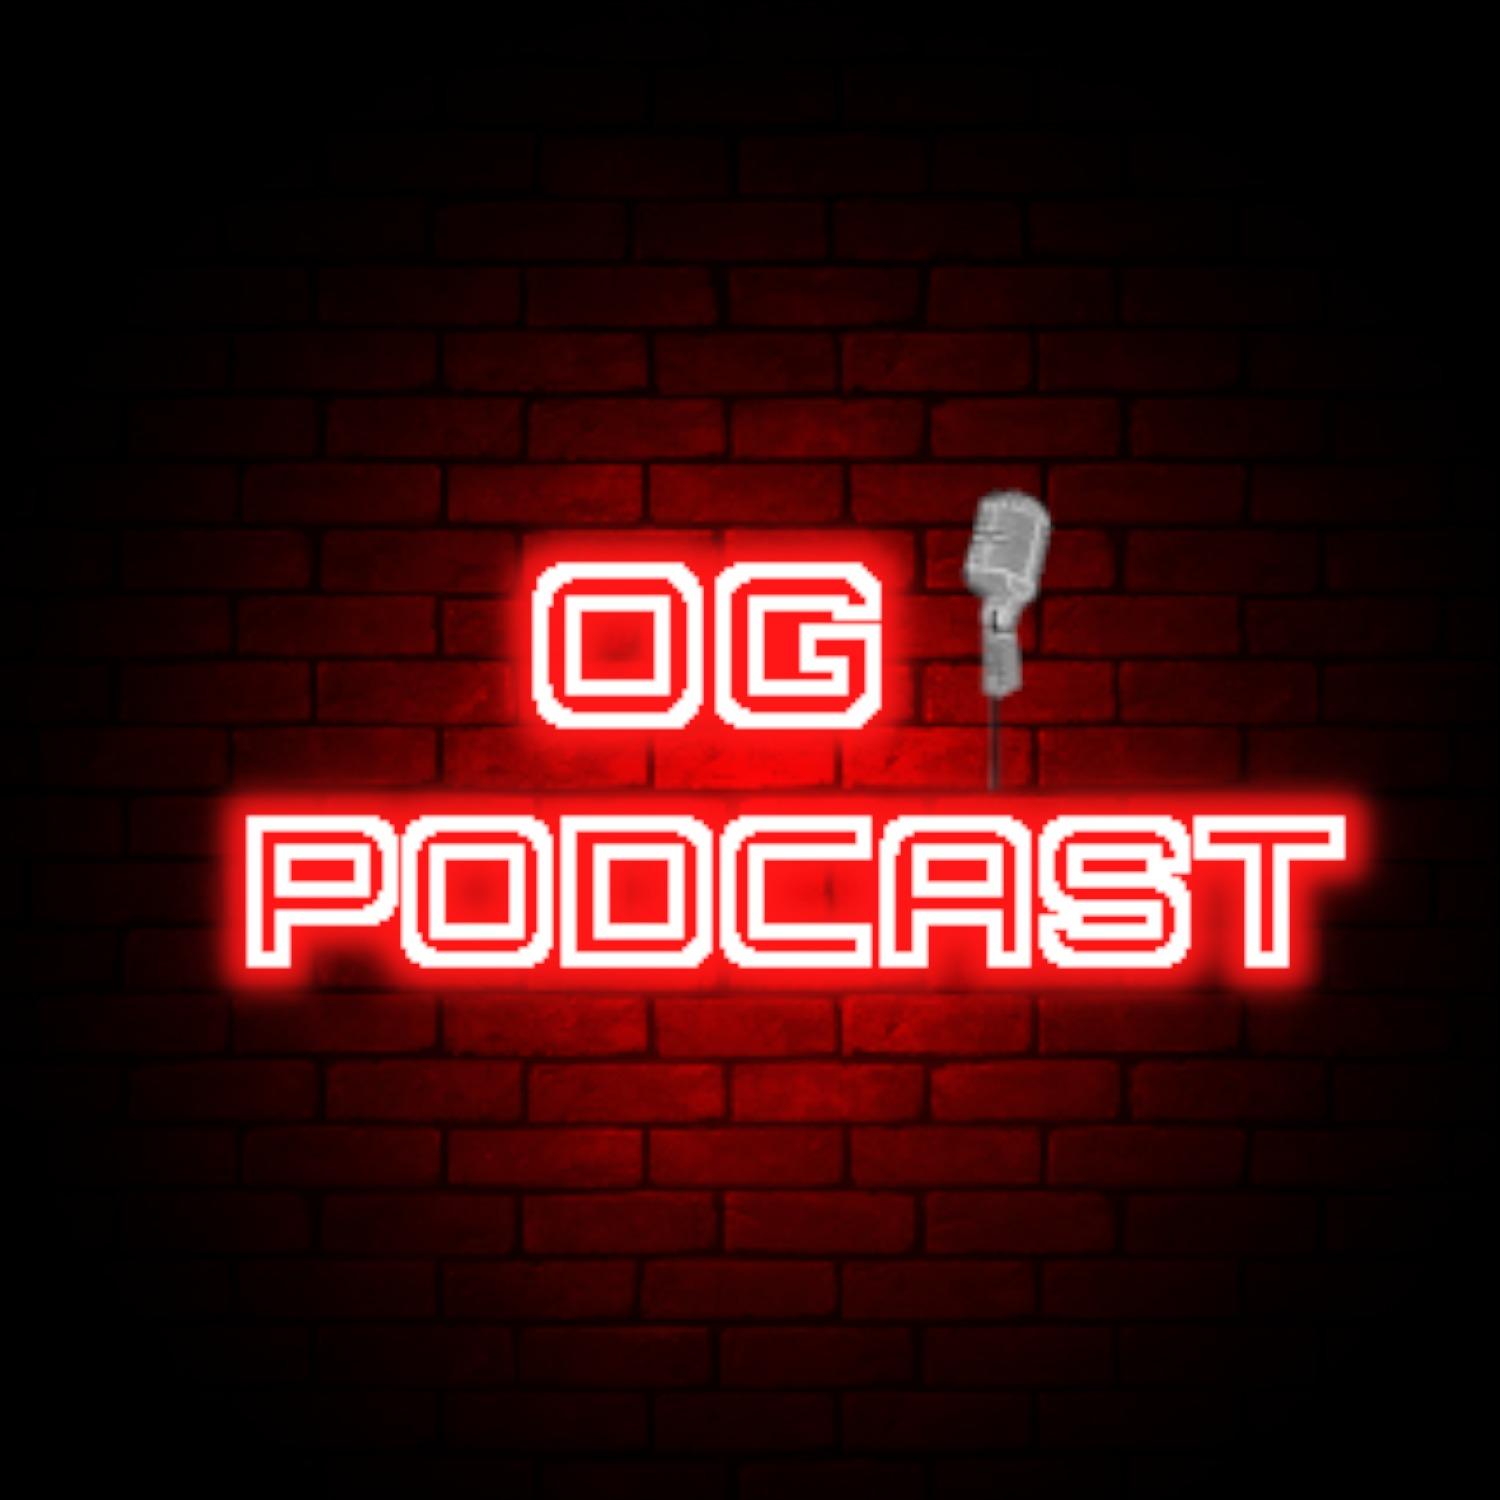 OG Podcast